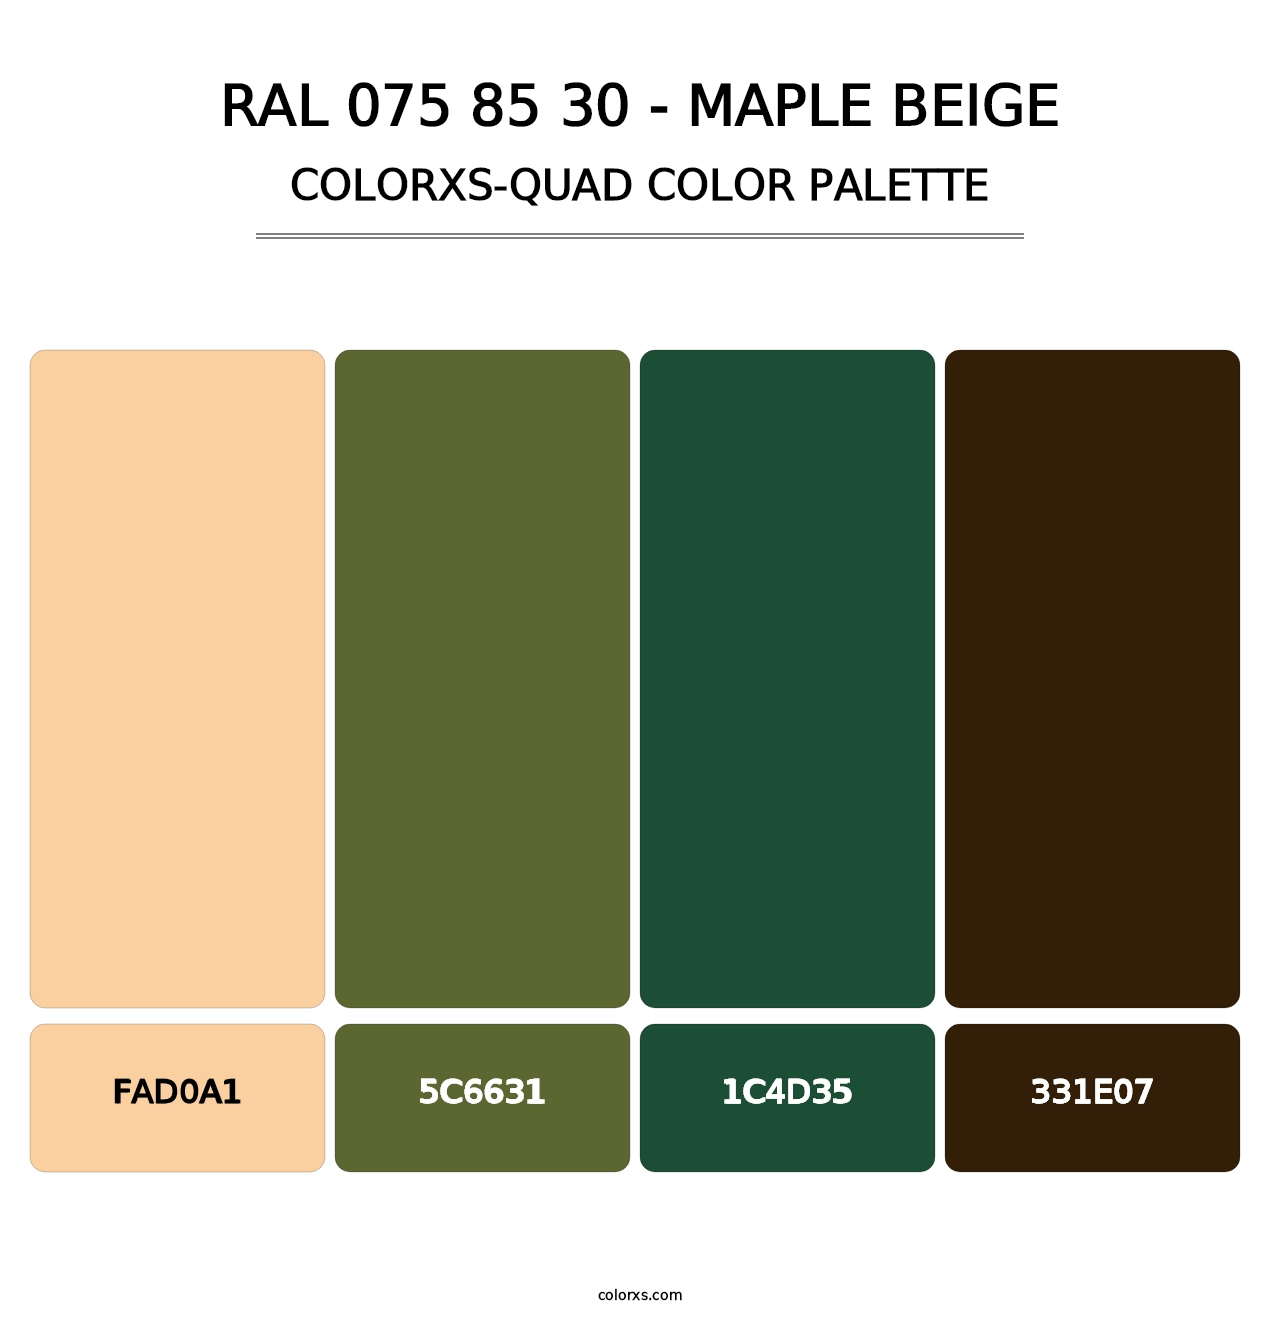 RAL 075 85 30 - Maple Beige - Colorxs Quad Palette